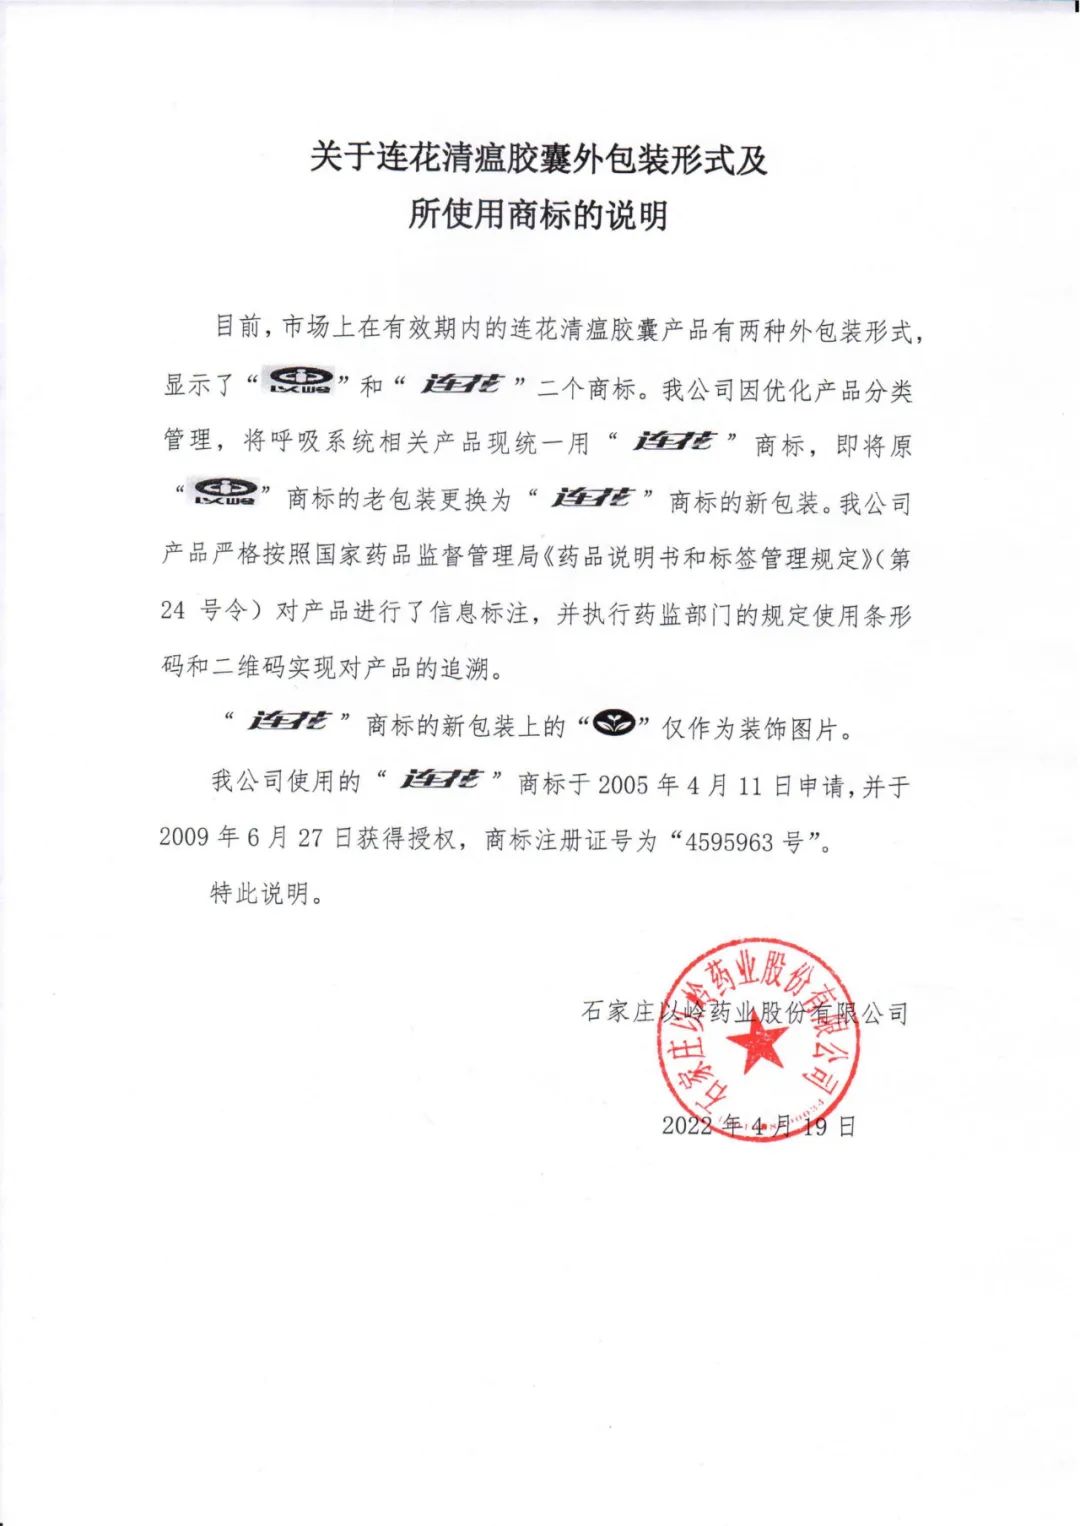 针对网传上海发放连花清瘟商标问题， 以岭药业回应称“连花”商标为新包装